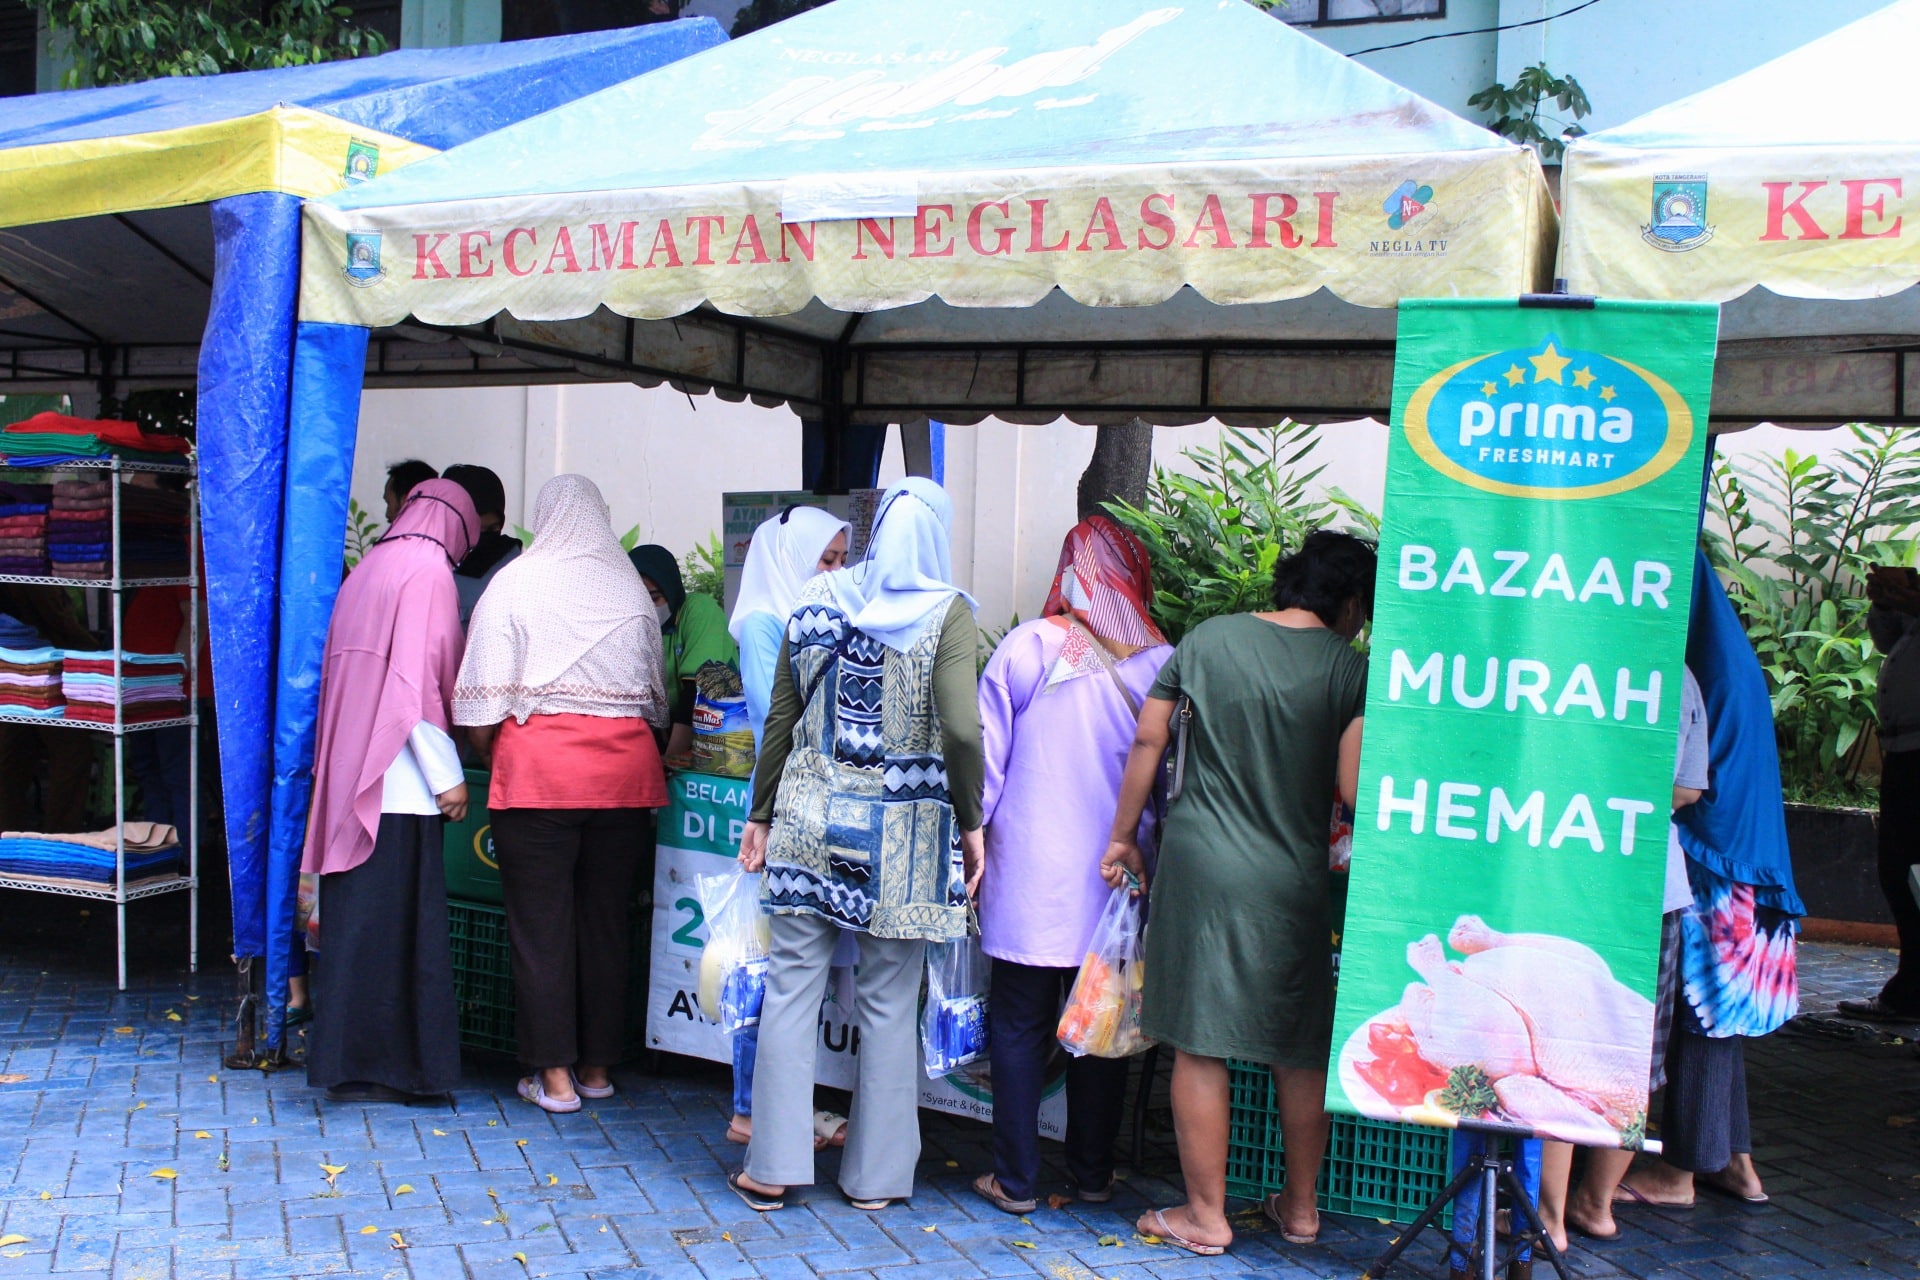 Bazar Murah di Kecamatan Neglasari Diserbu Warga, Beras 5kg Plus Minyak Goreng Dibandrol Rp56 Ribu